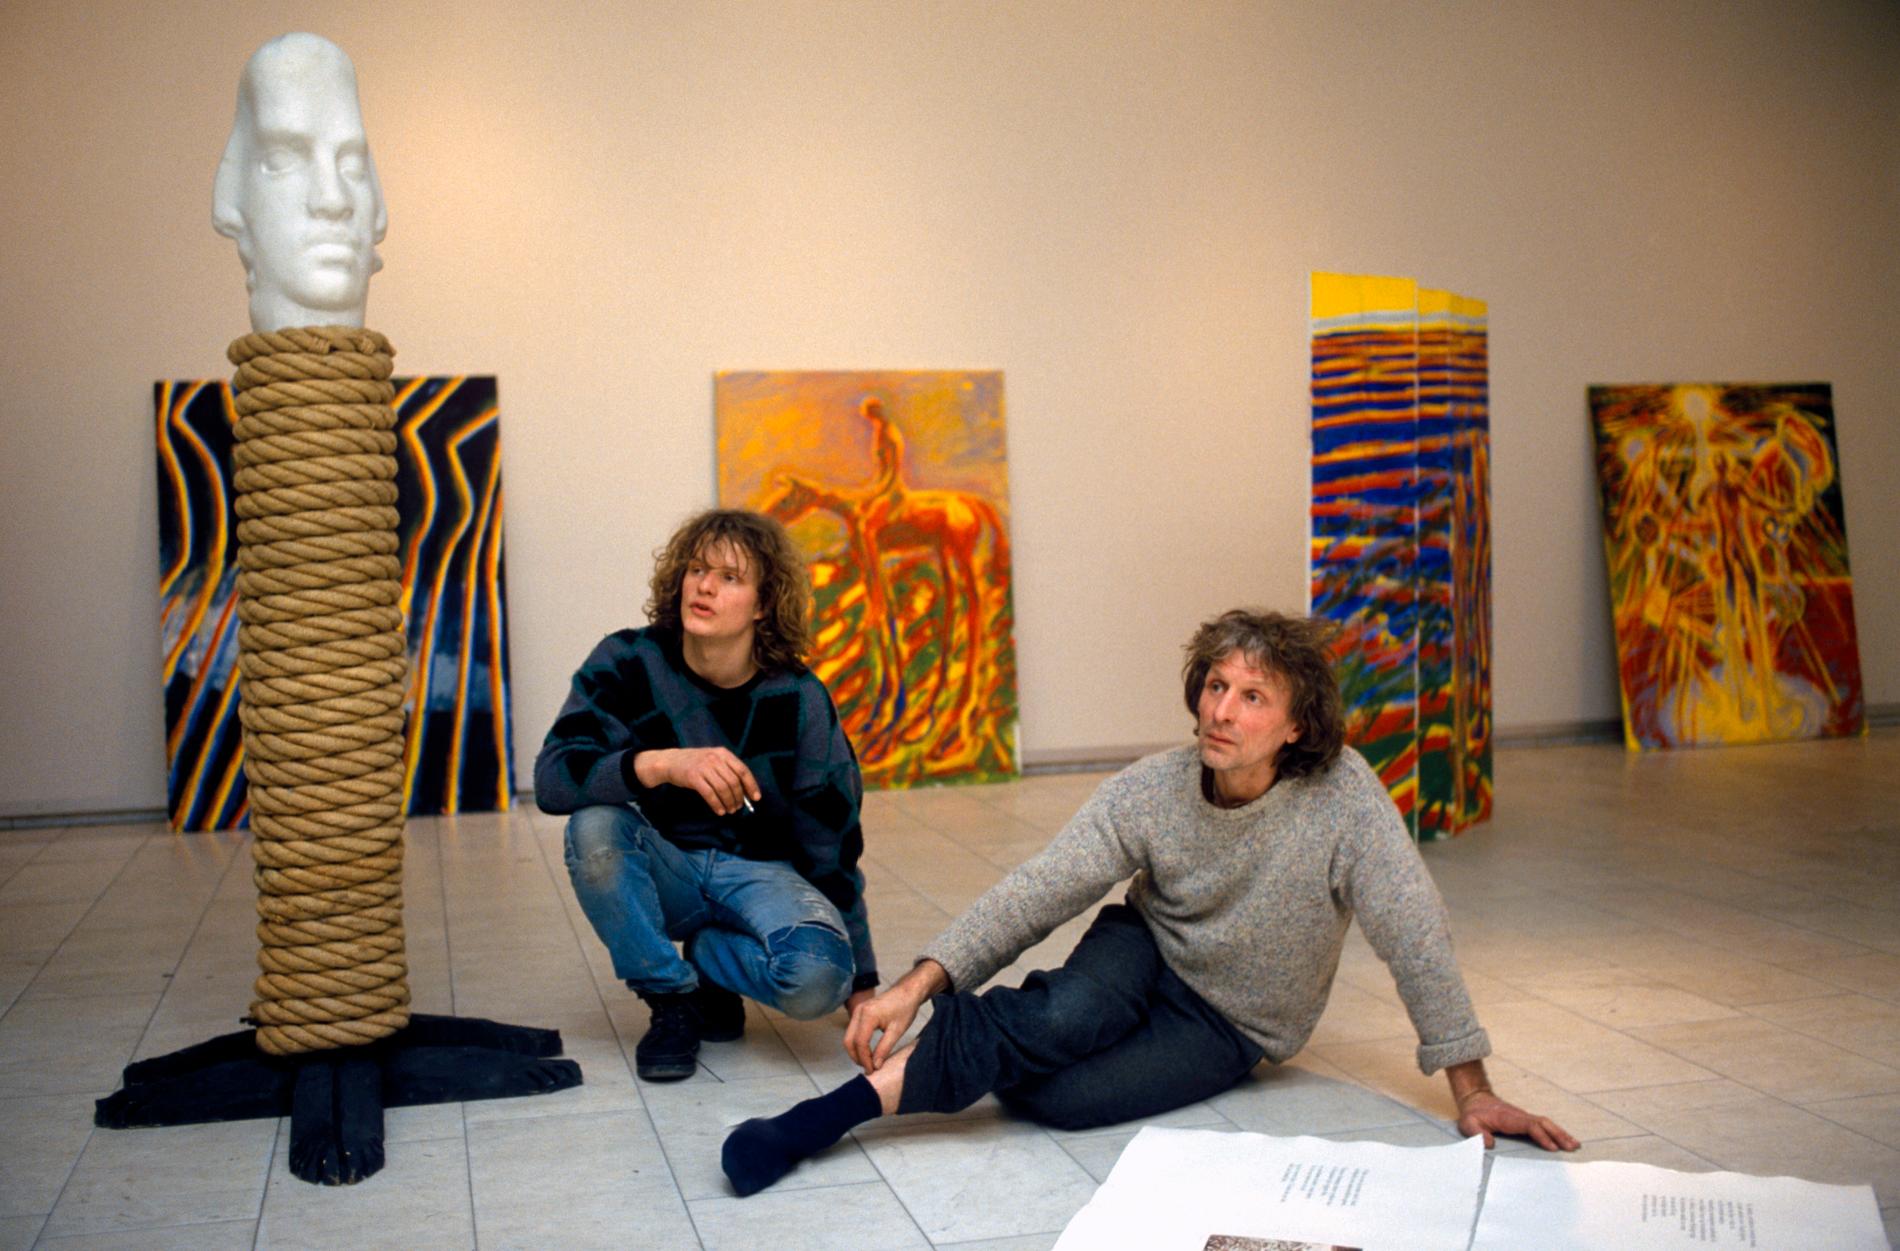 Billedkunstnerne Frans Widerberg og sønnen Nico Widerberg her i et arkivbilde fra 1986 med noen av kunstverkene, bilder og skulptur.
Foto Henrik Laurvik / NTB / SCANPIX